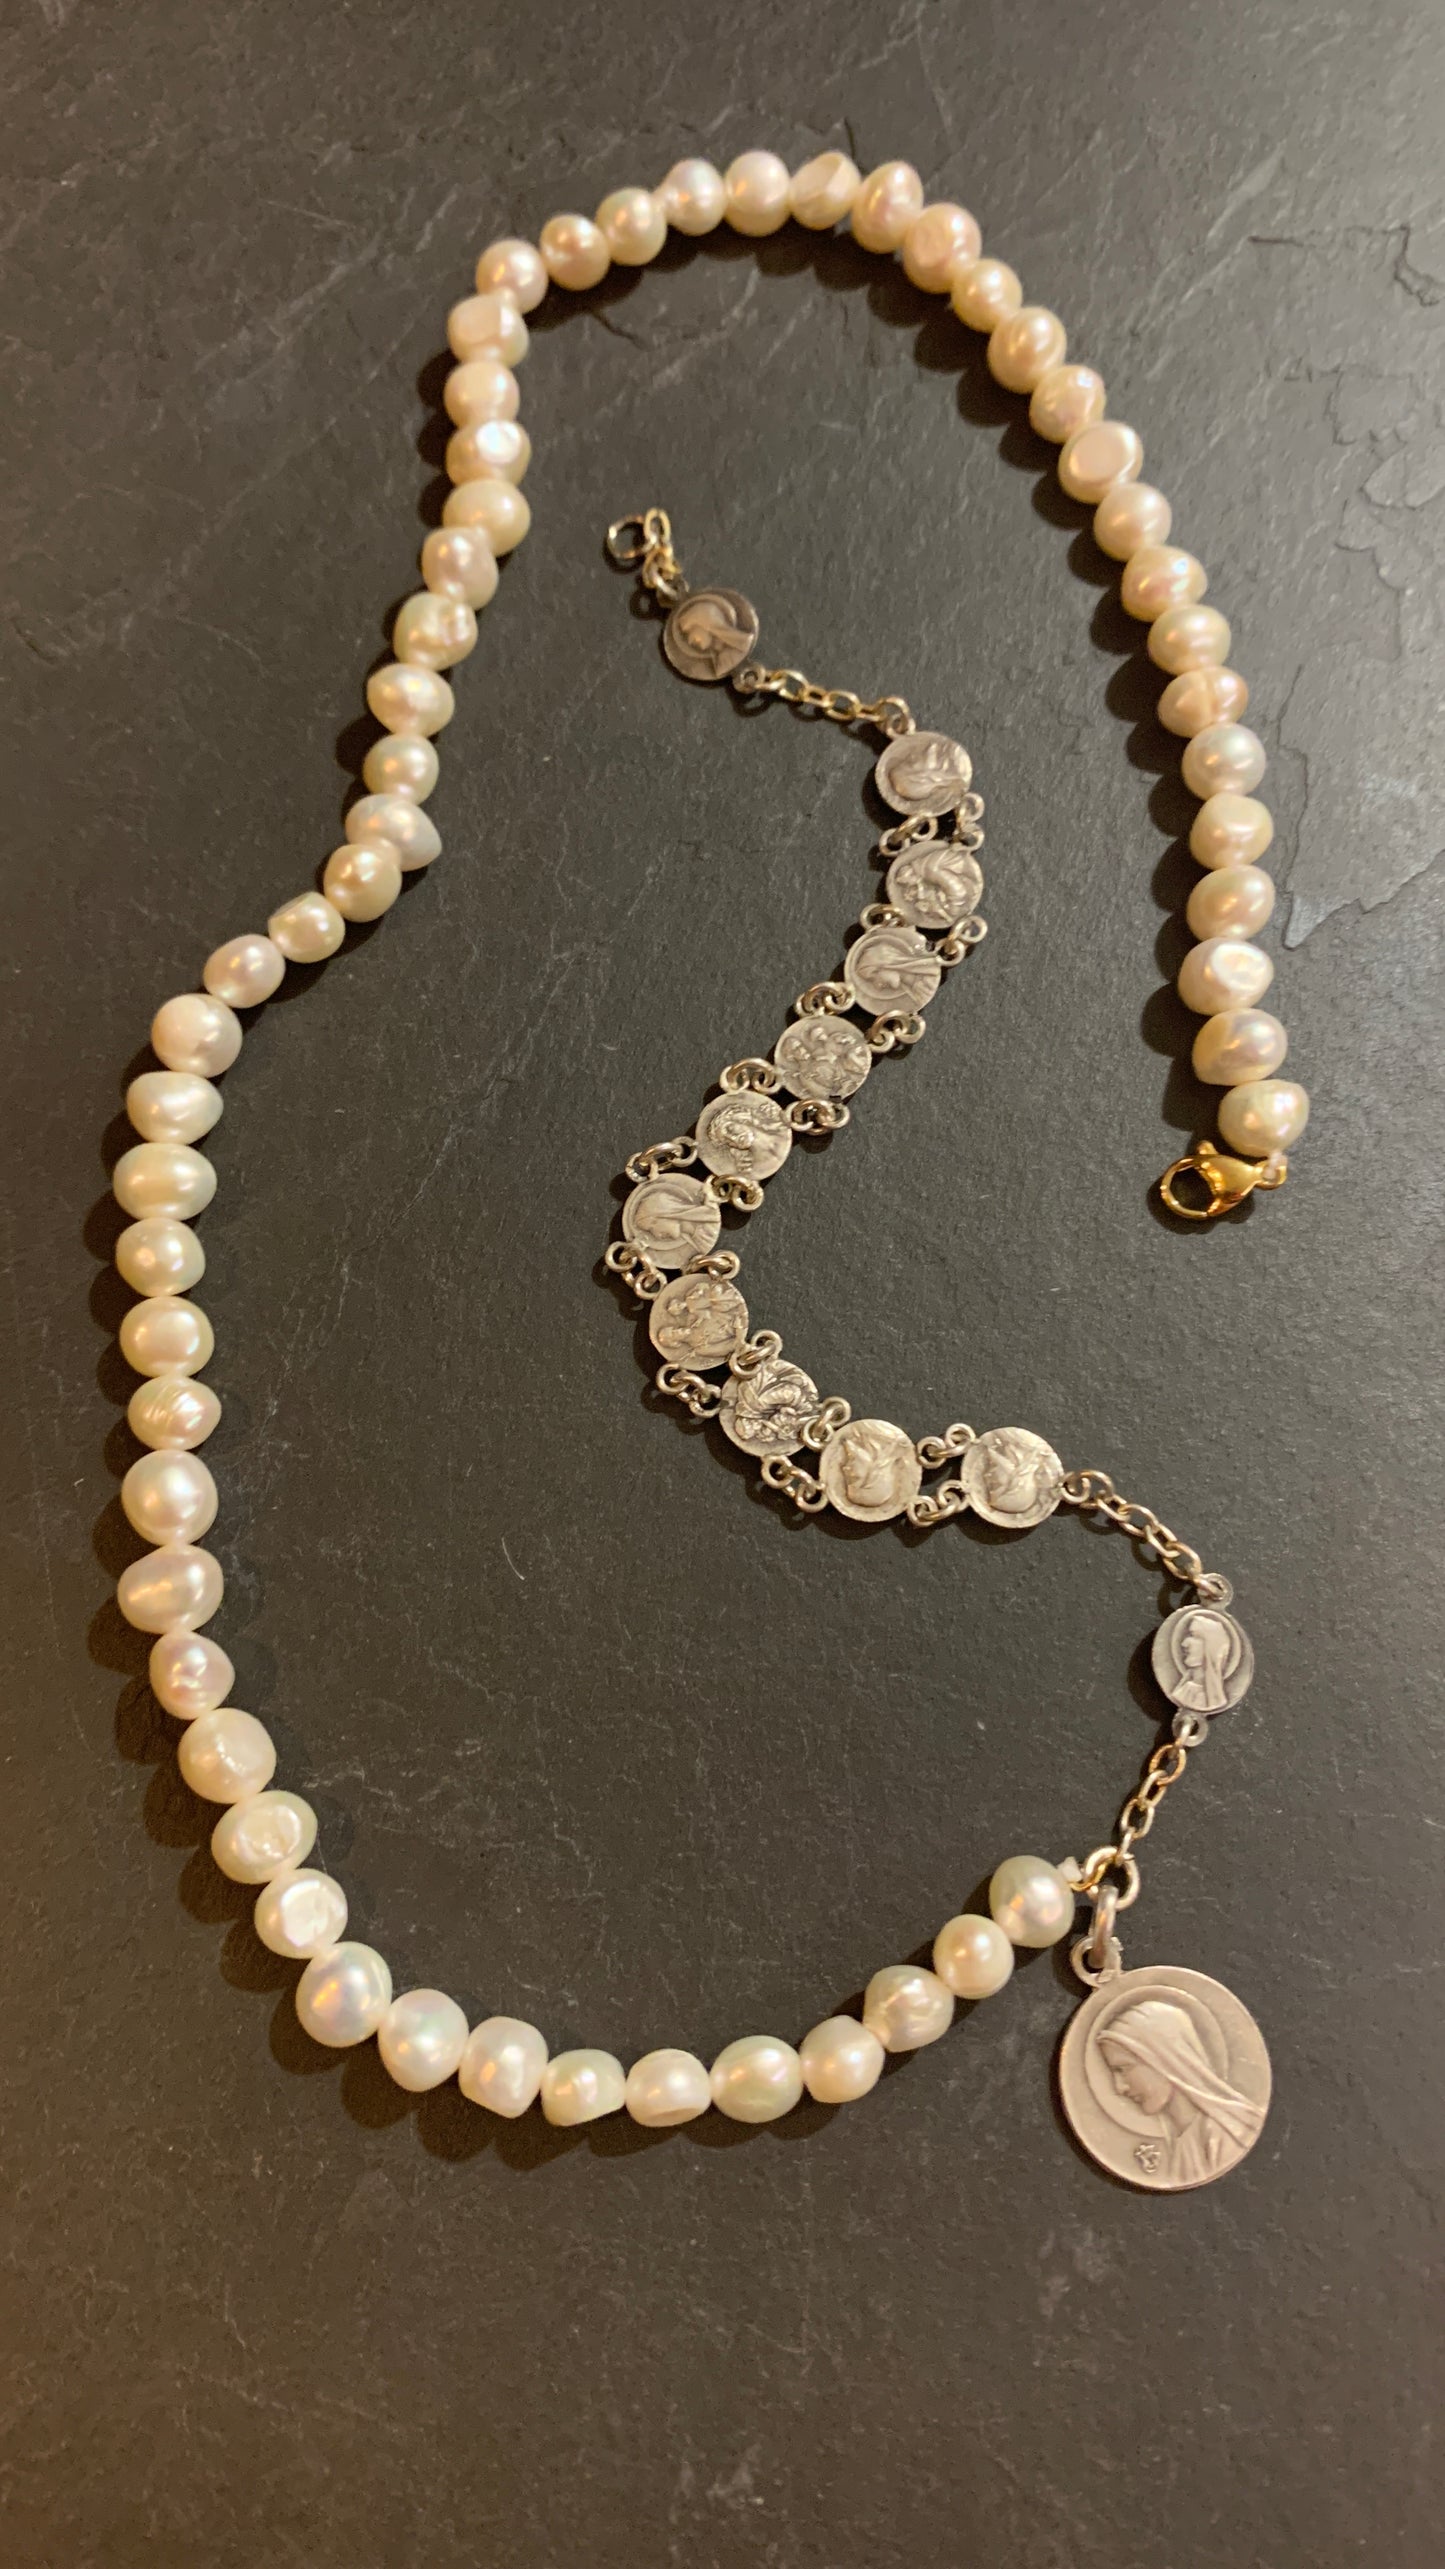 Sautoir perles et médailles argentées